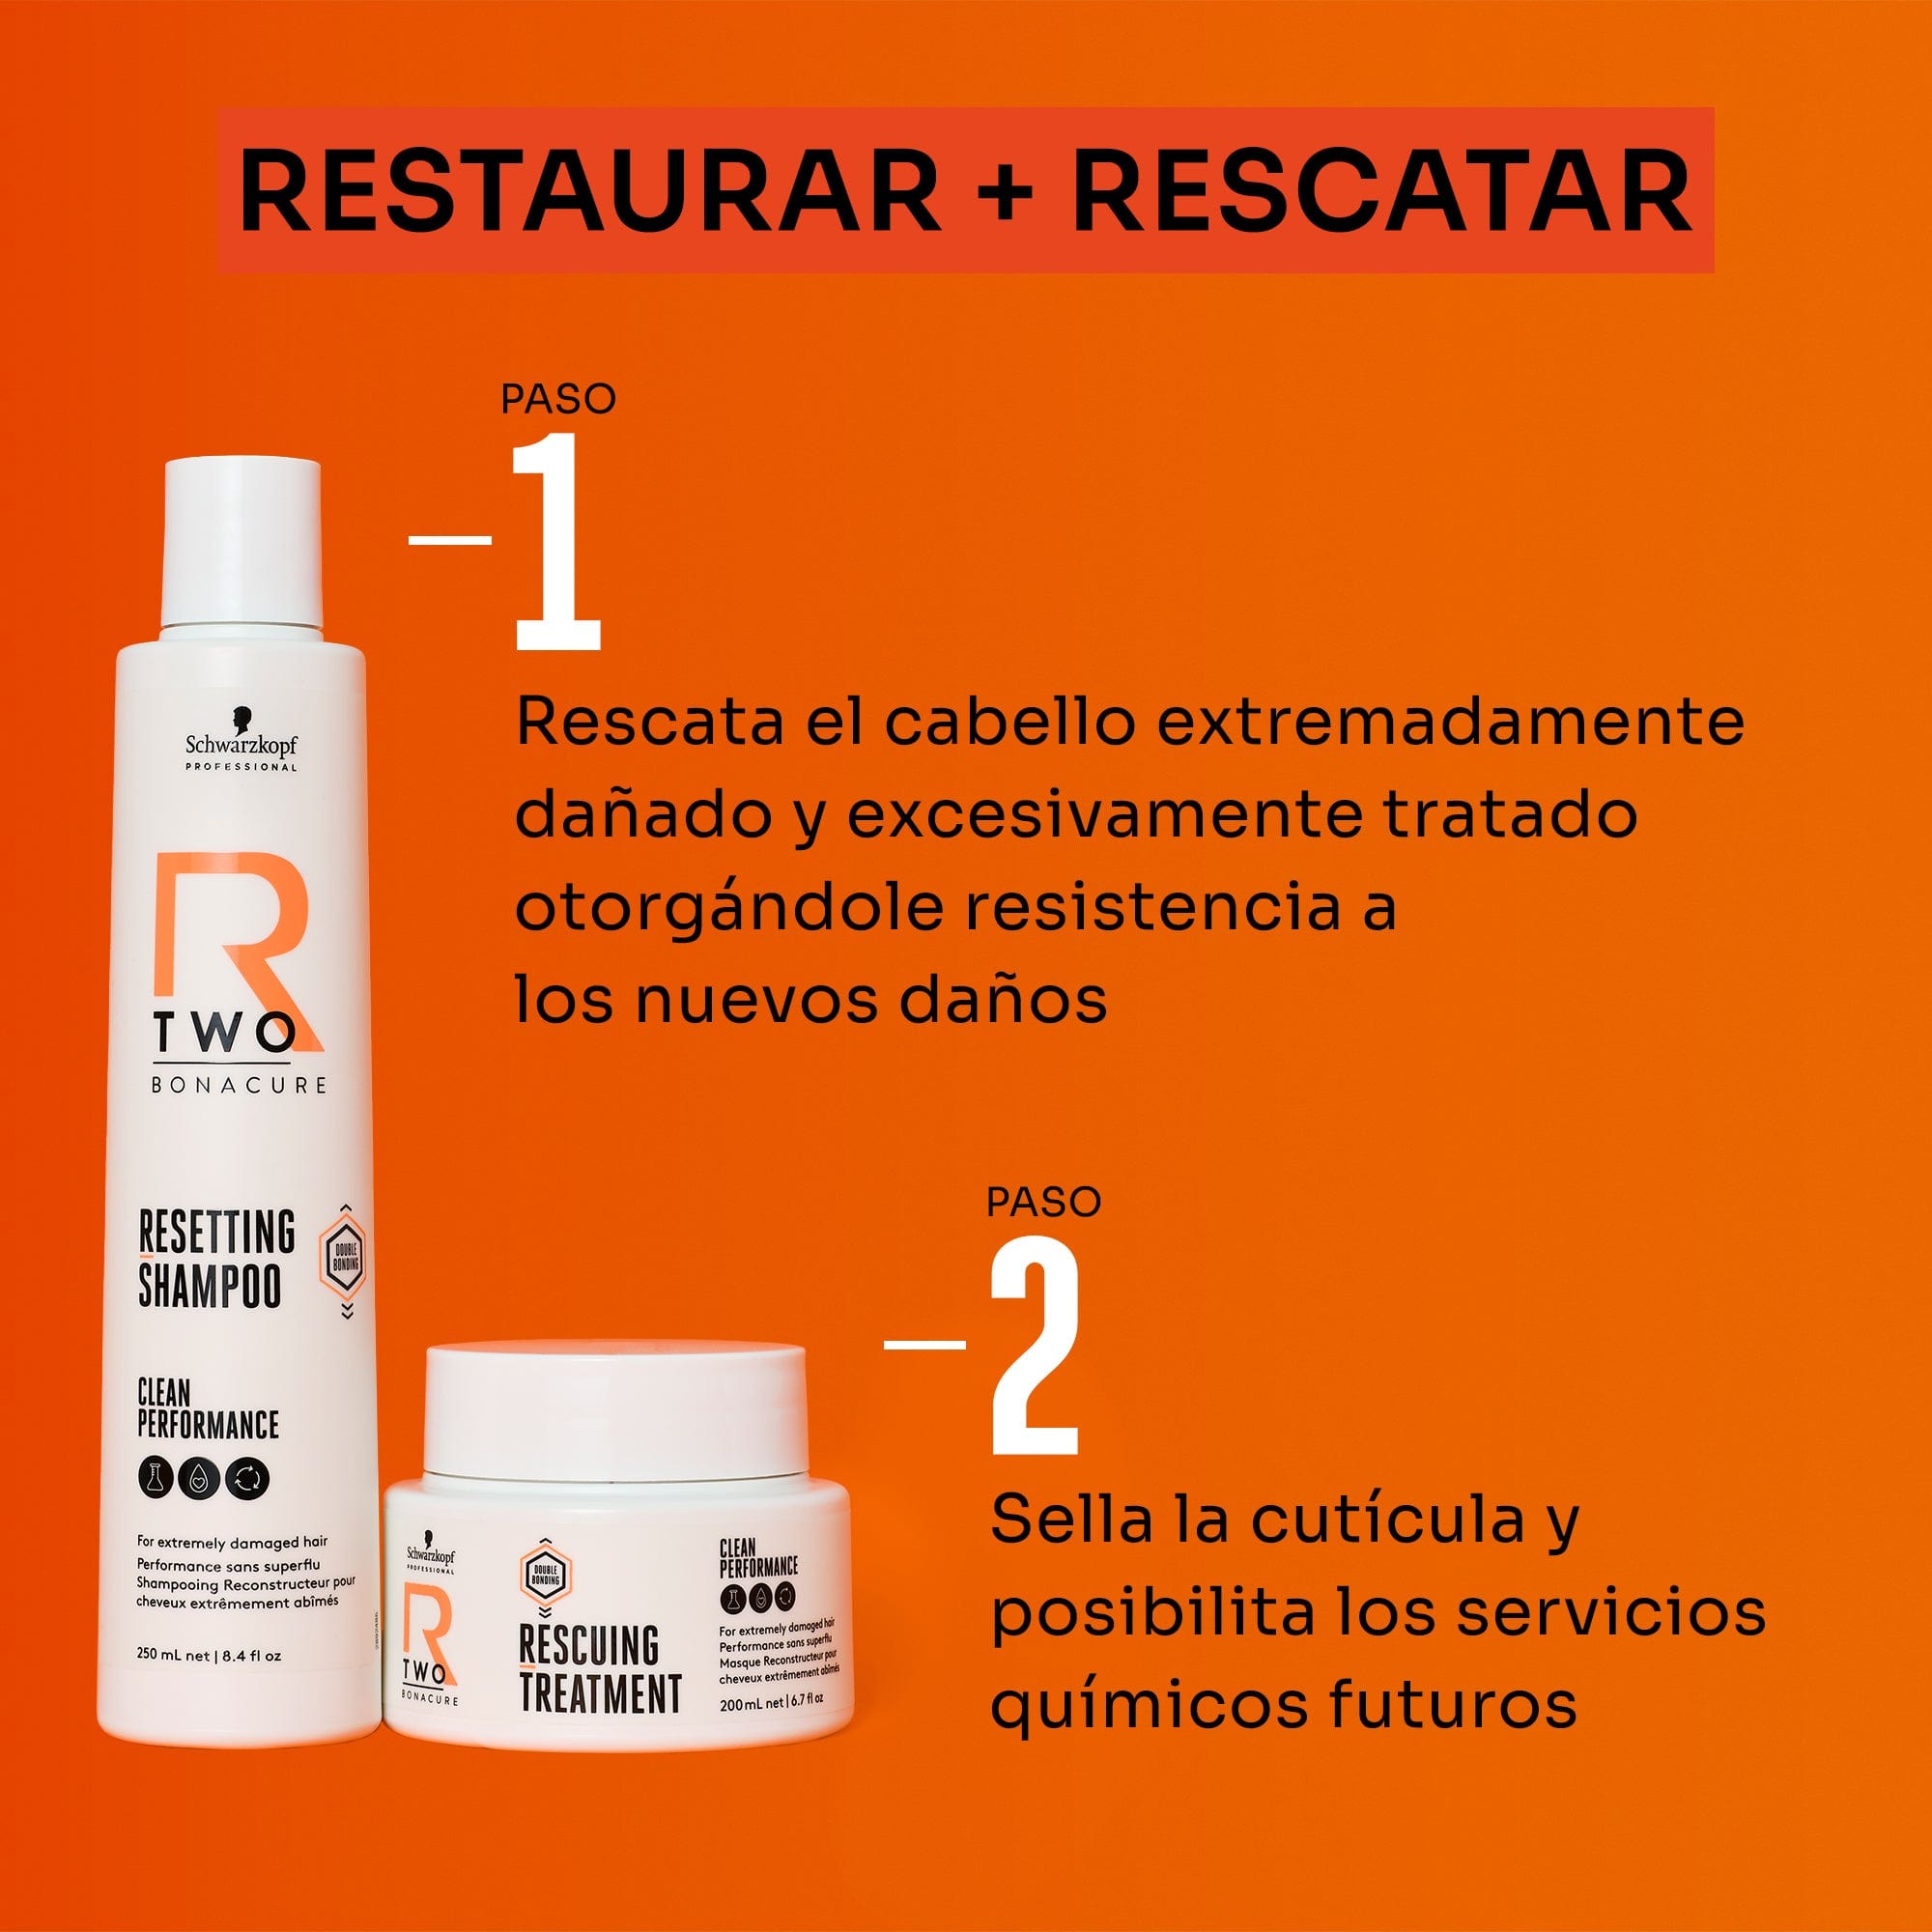 BC Bonacure Mascarilla Capilar Bonacure R-TWO Tratamiento Reparador 500ml Roberta Beauty Club Tienda Online Productos de Peluqueria